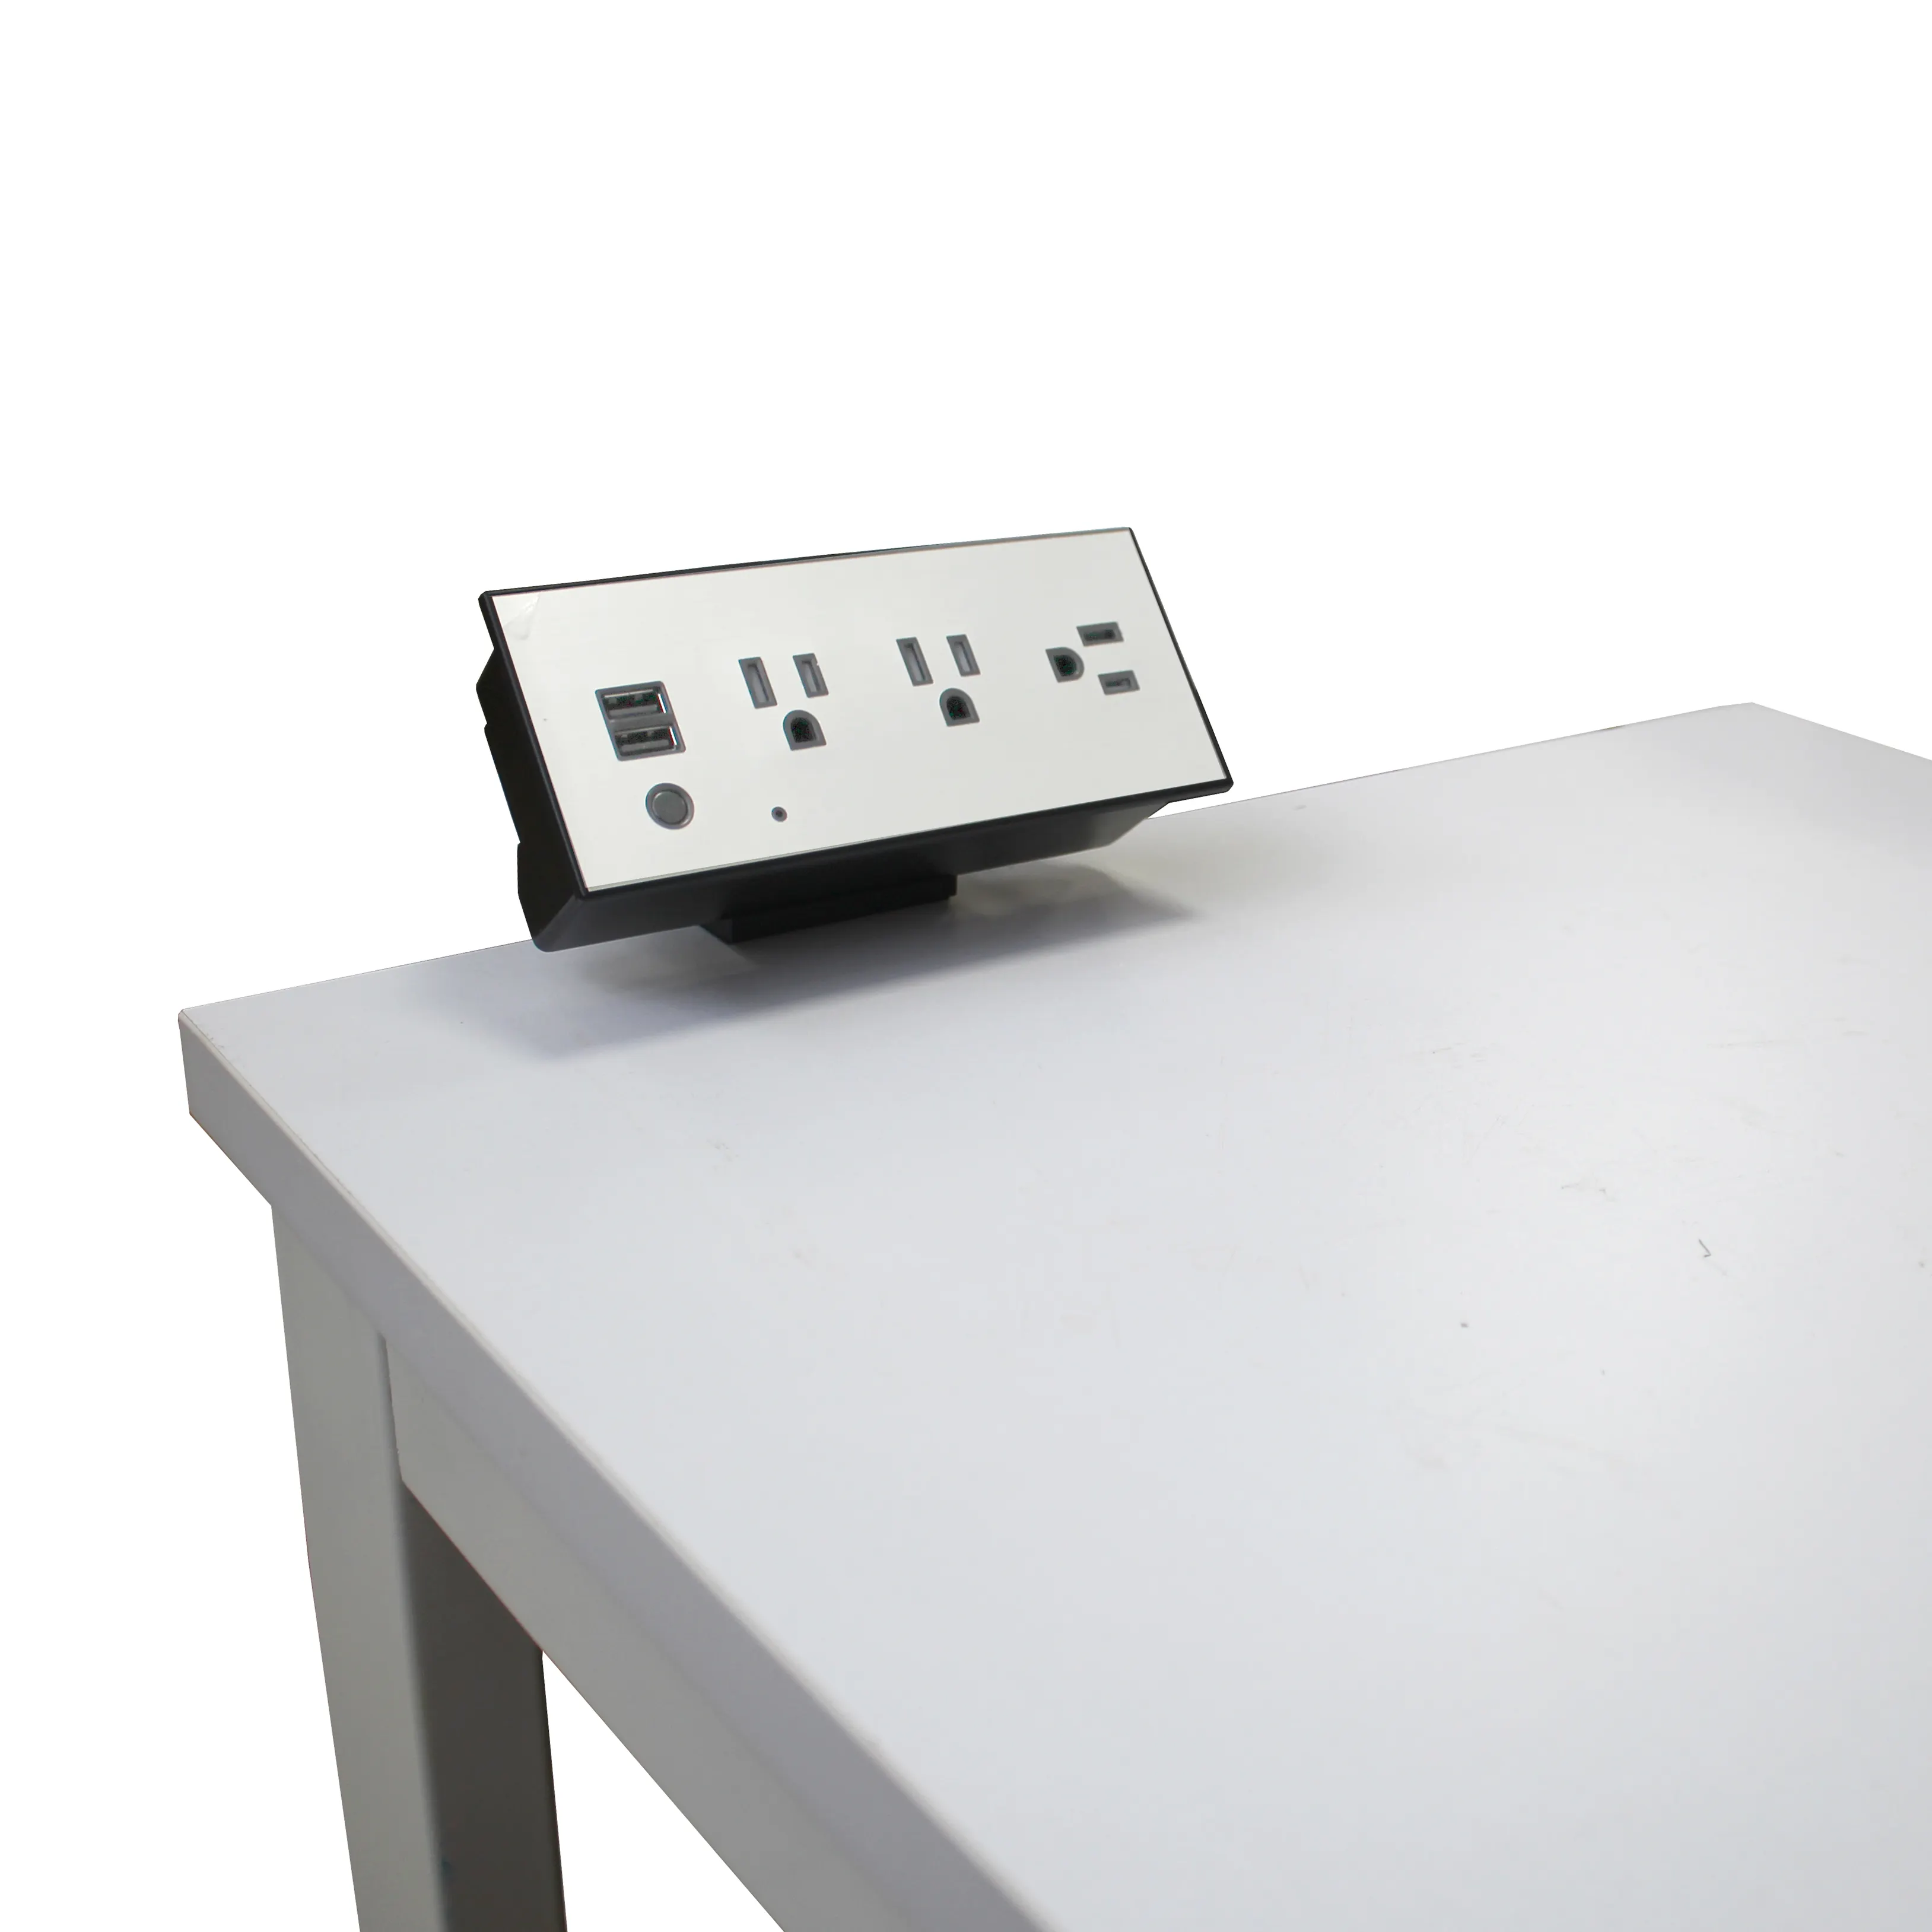 Abd masa yan kelepçe soket masa üstü ETL klip masaüstü güç soket şarj cihazı uzatma kanada okul sırası kullanımı